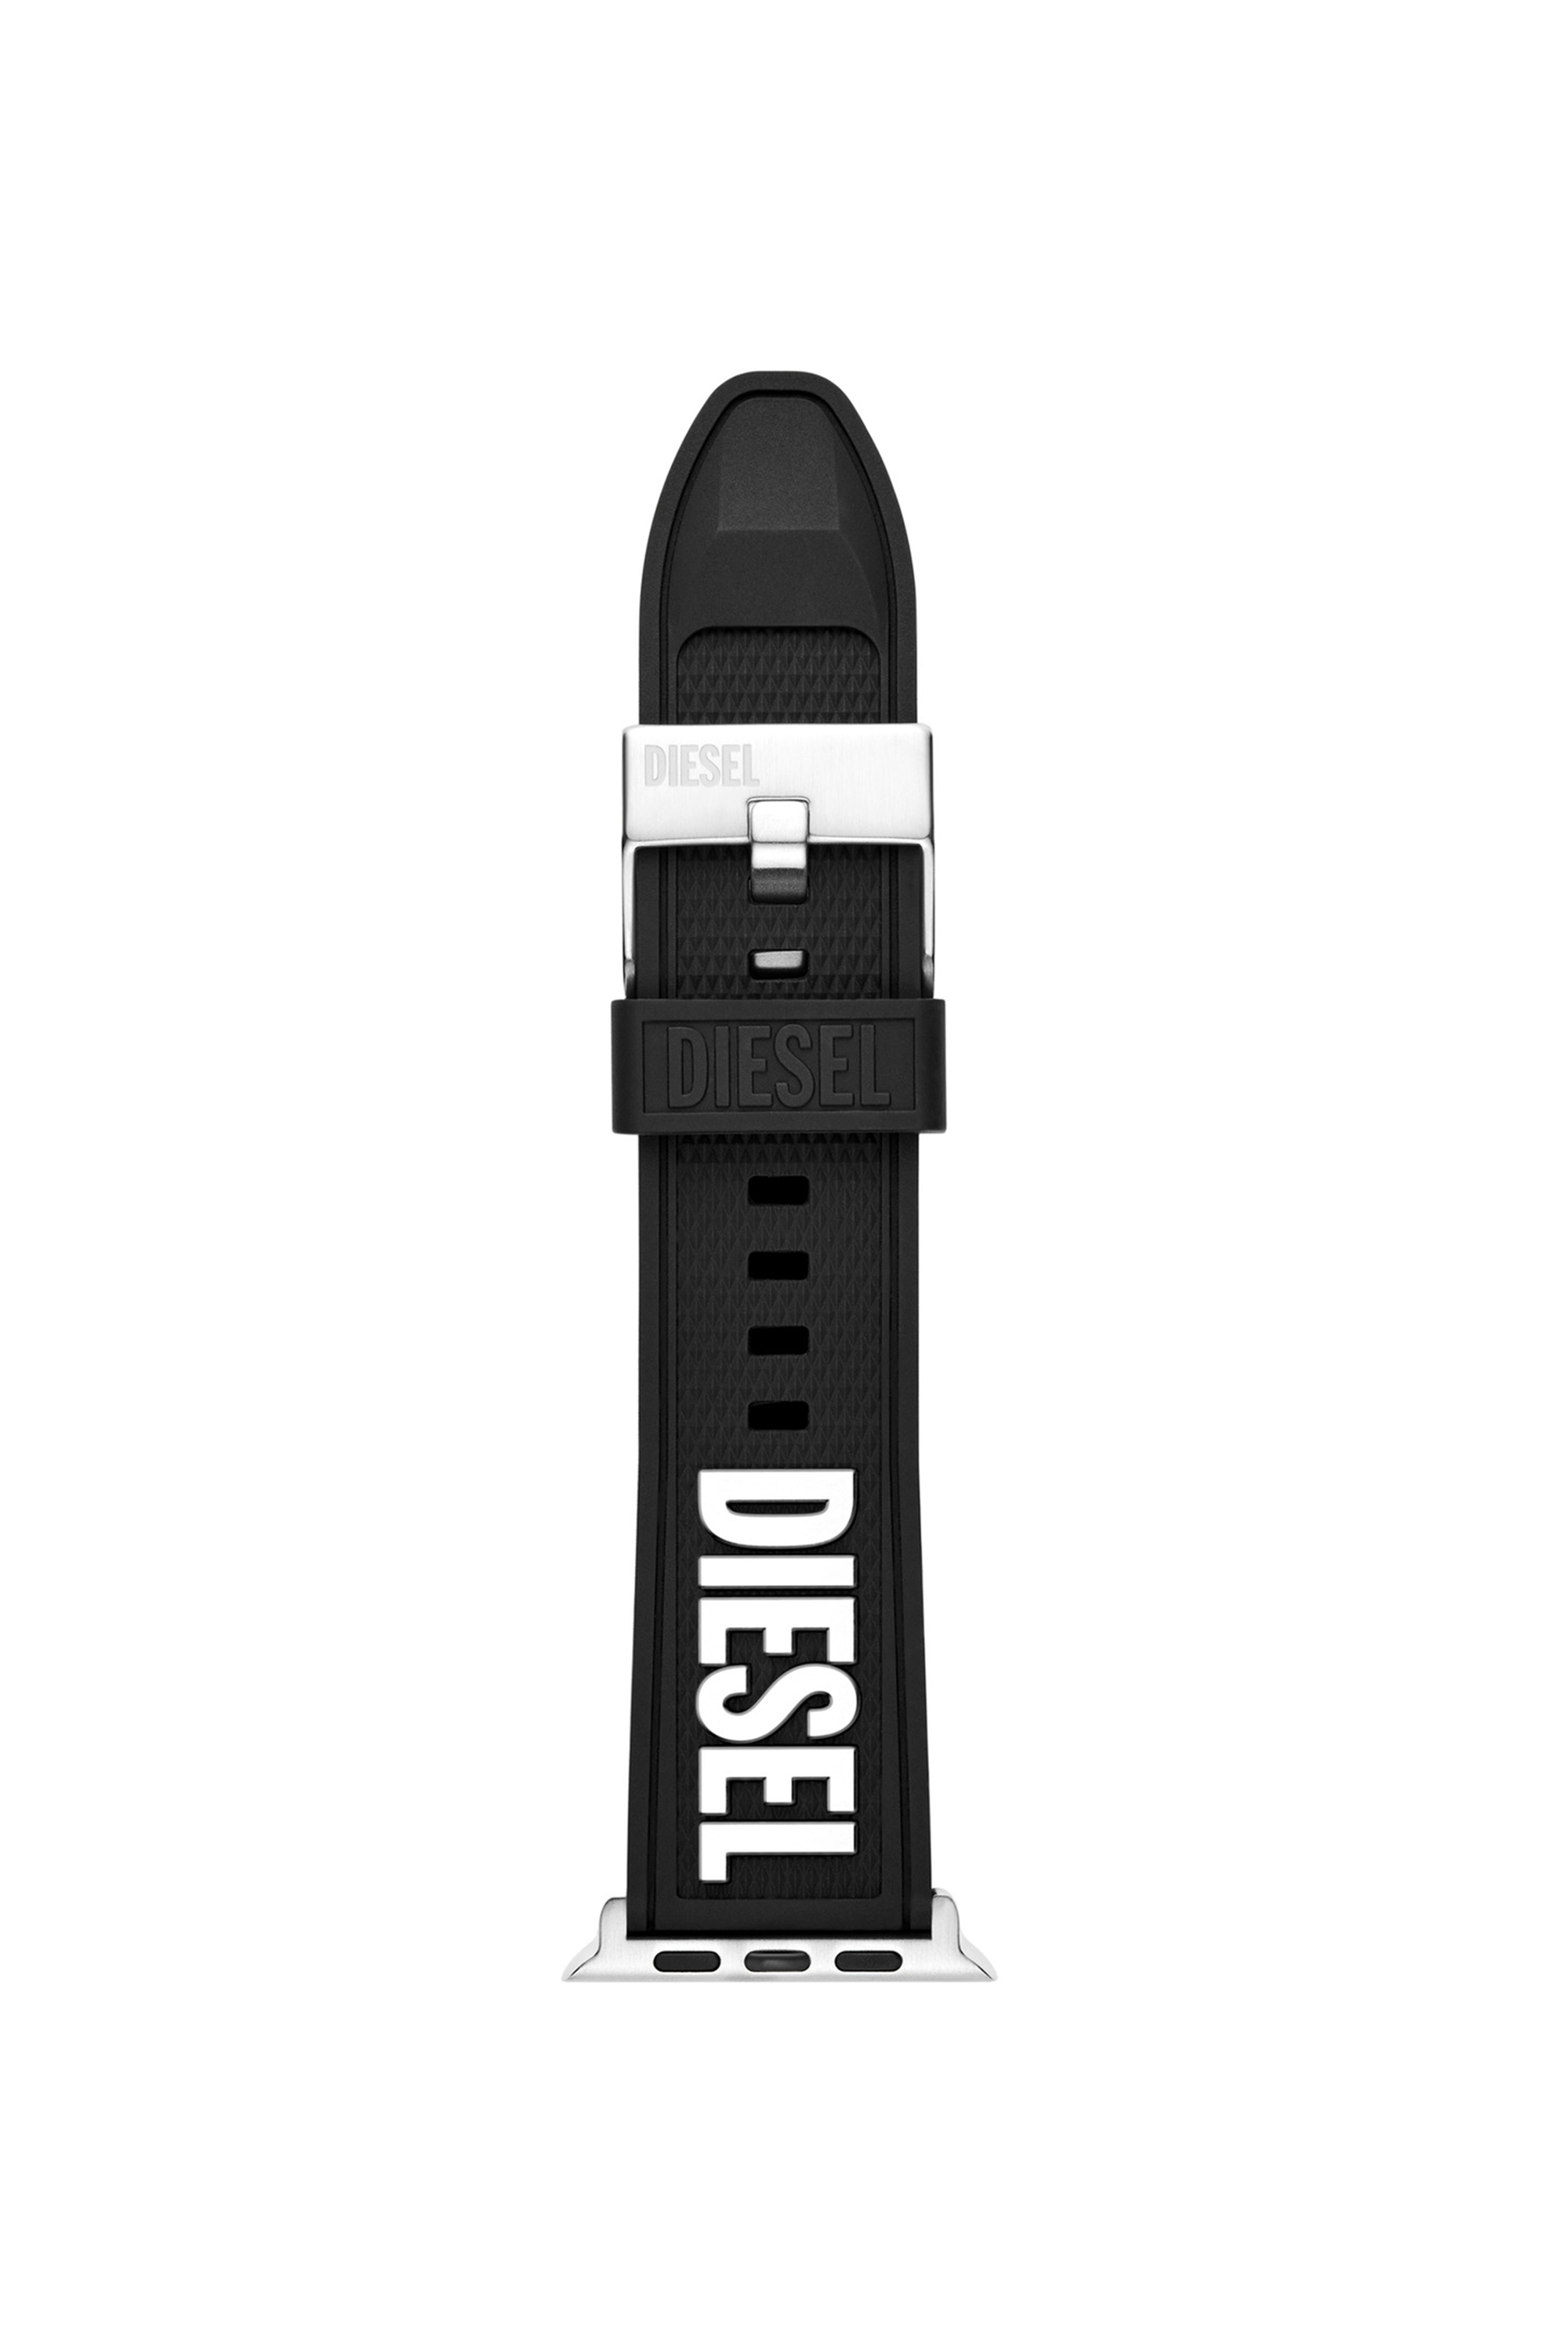 Diesel - DSS011, Negro - Image 1